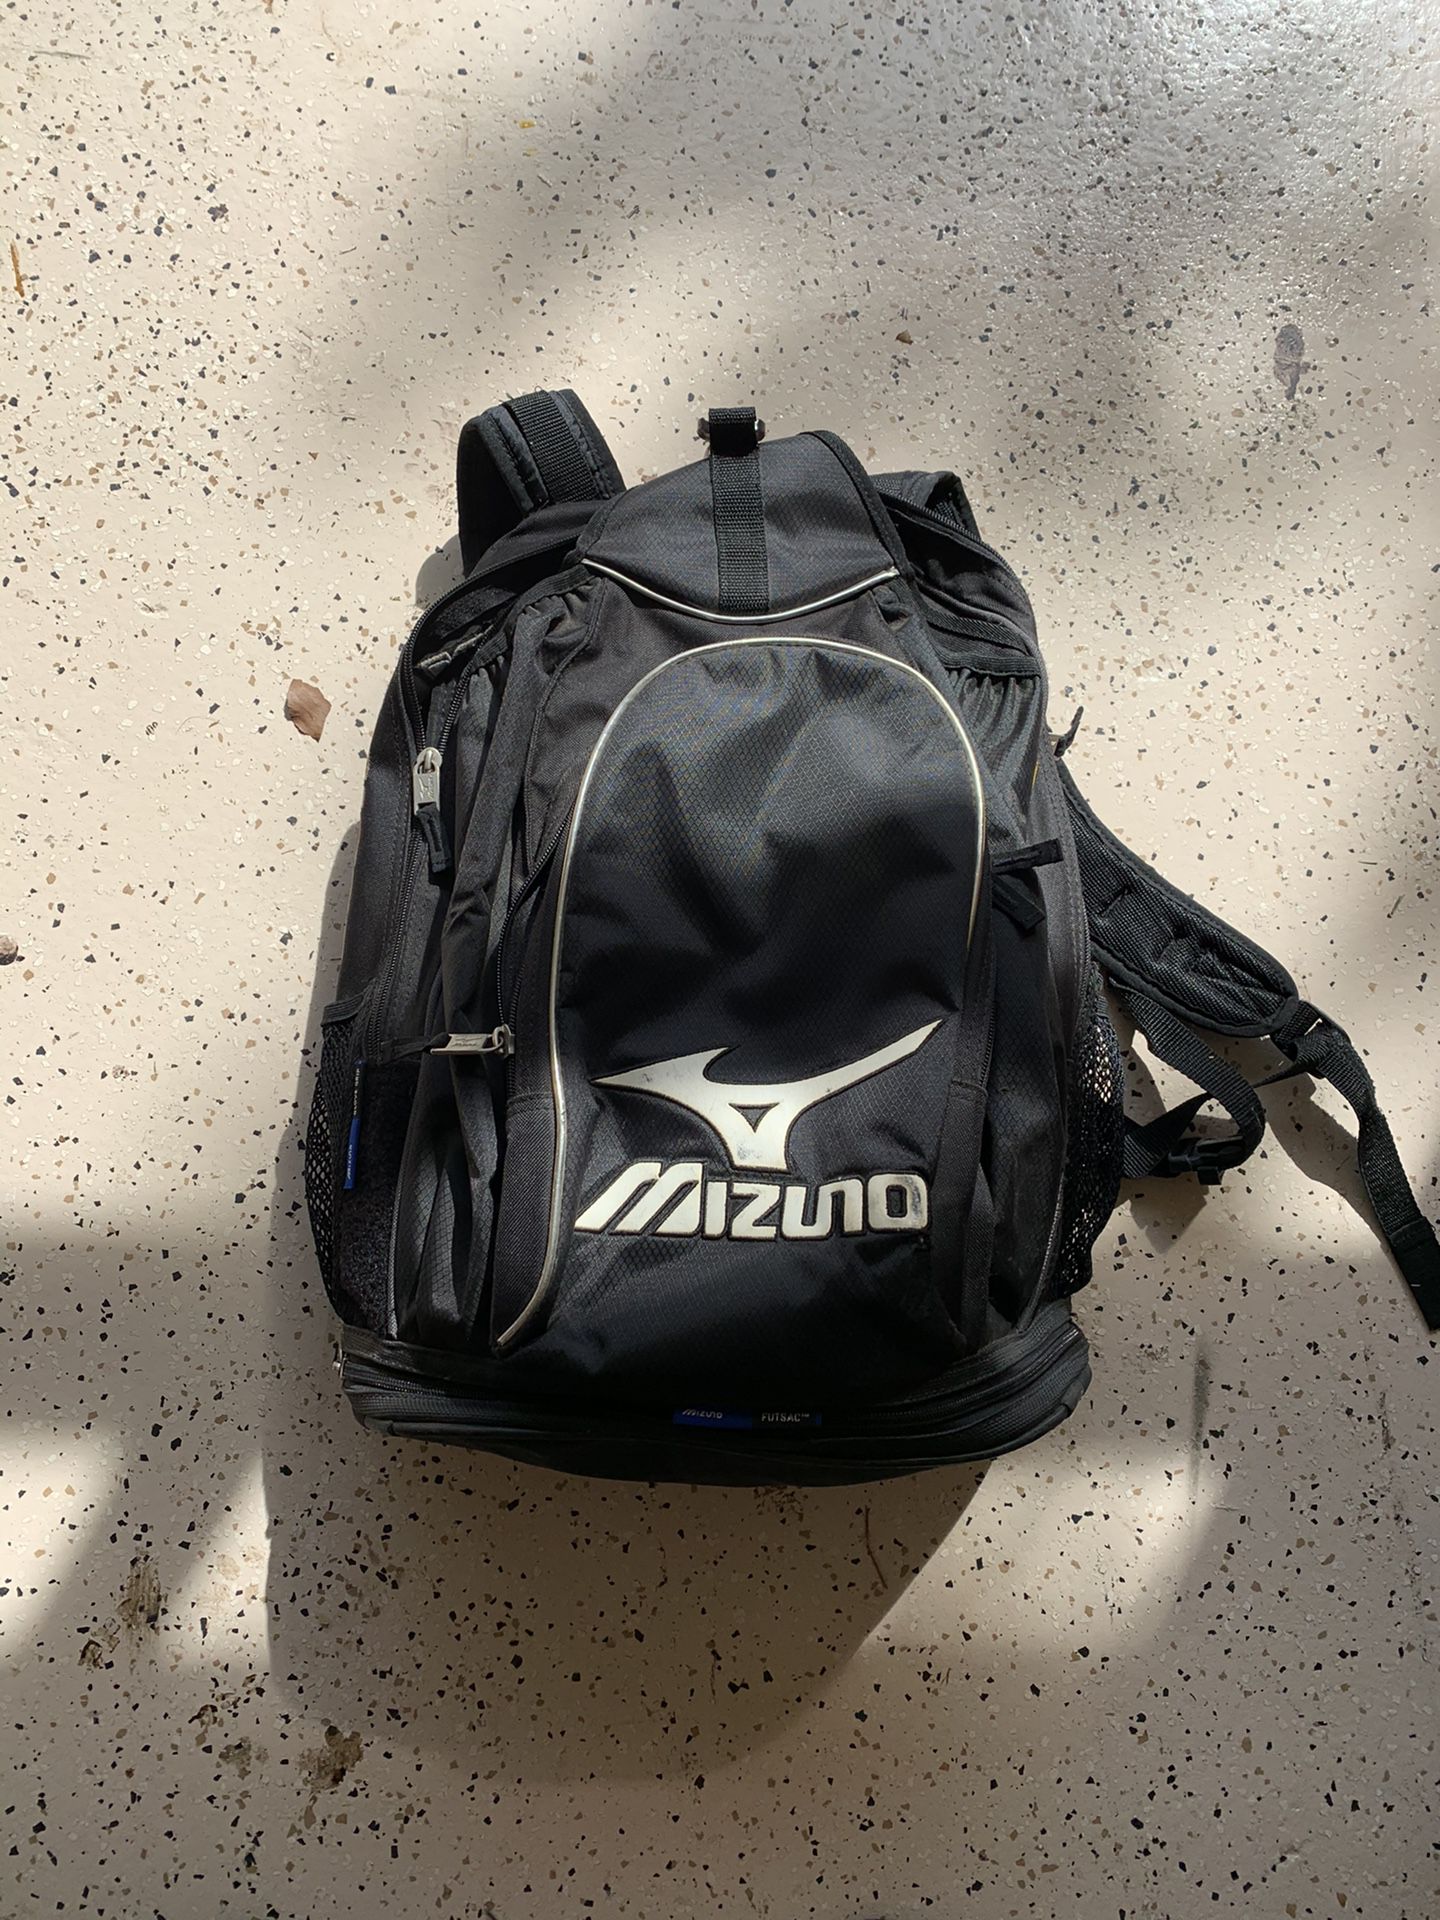 Mizuno Baseball/Softball Bag